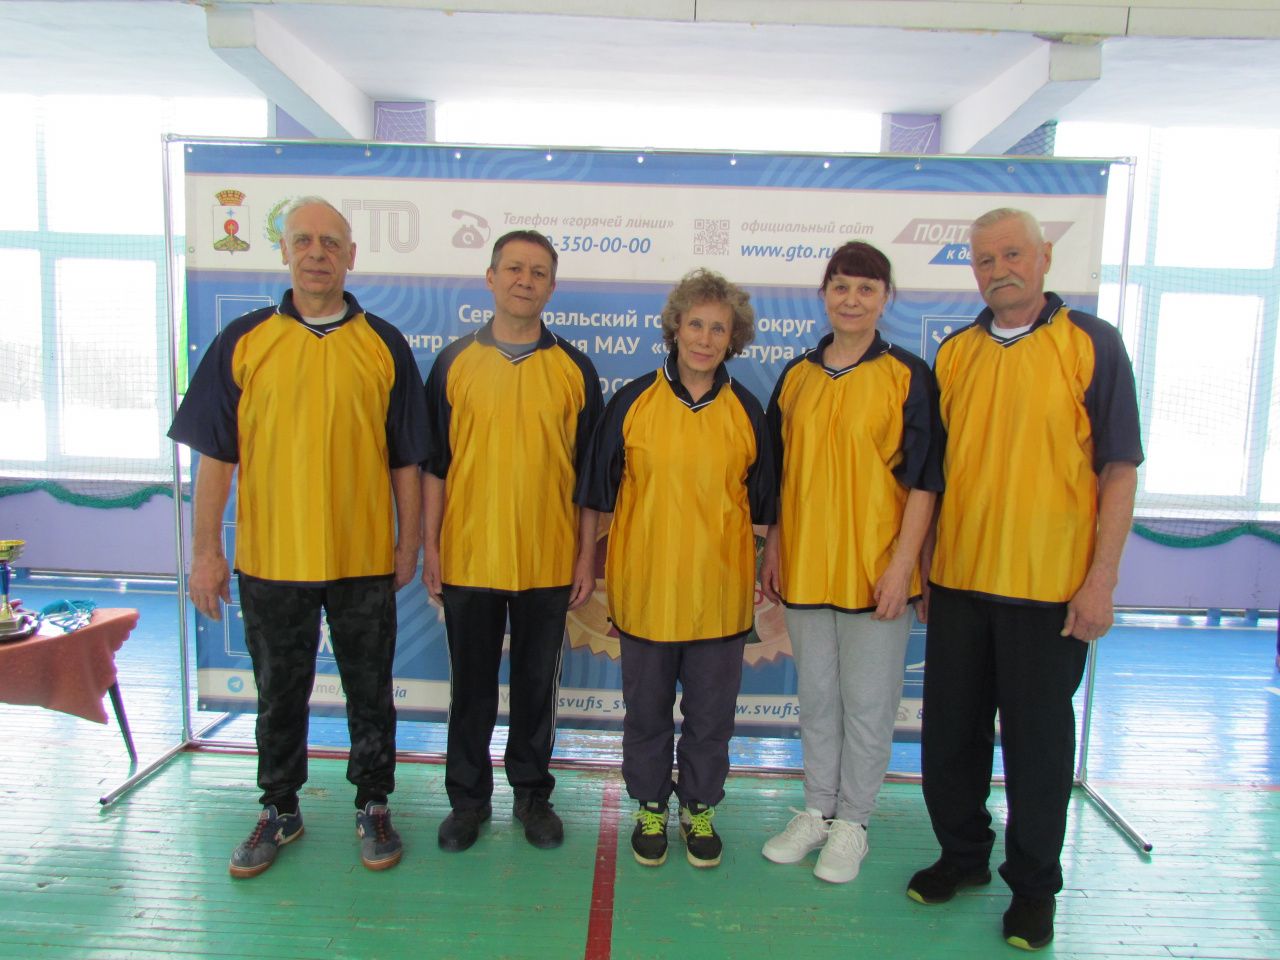 Команда ветеранов СУБРа победила в спортивном фестивале ГТО